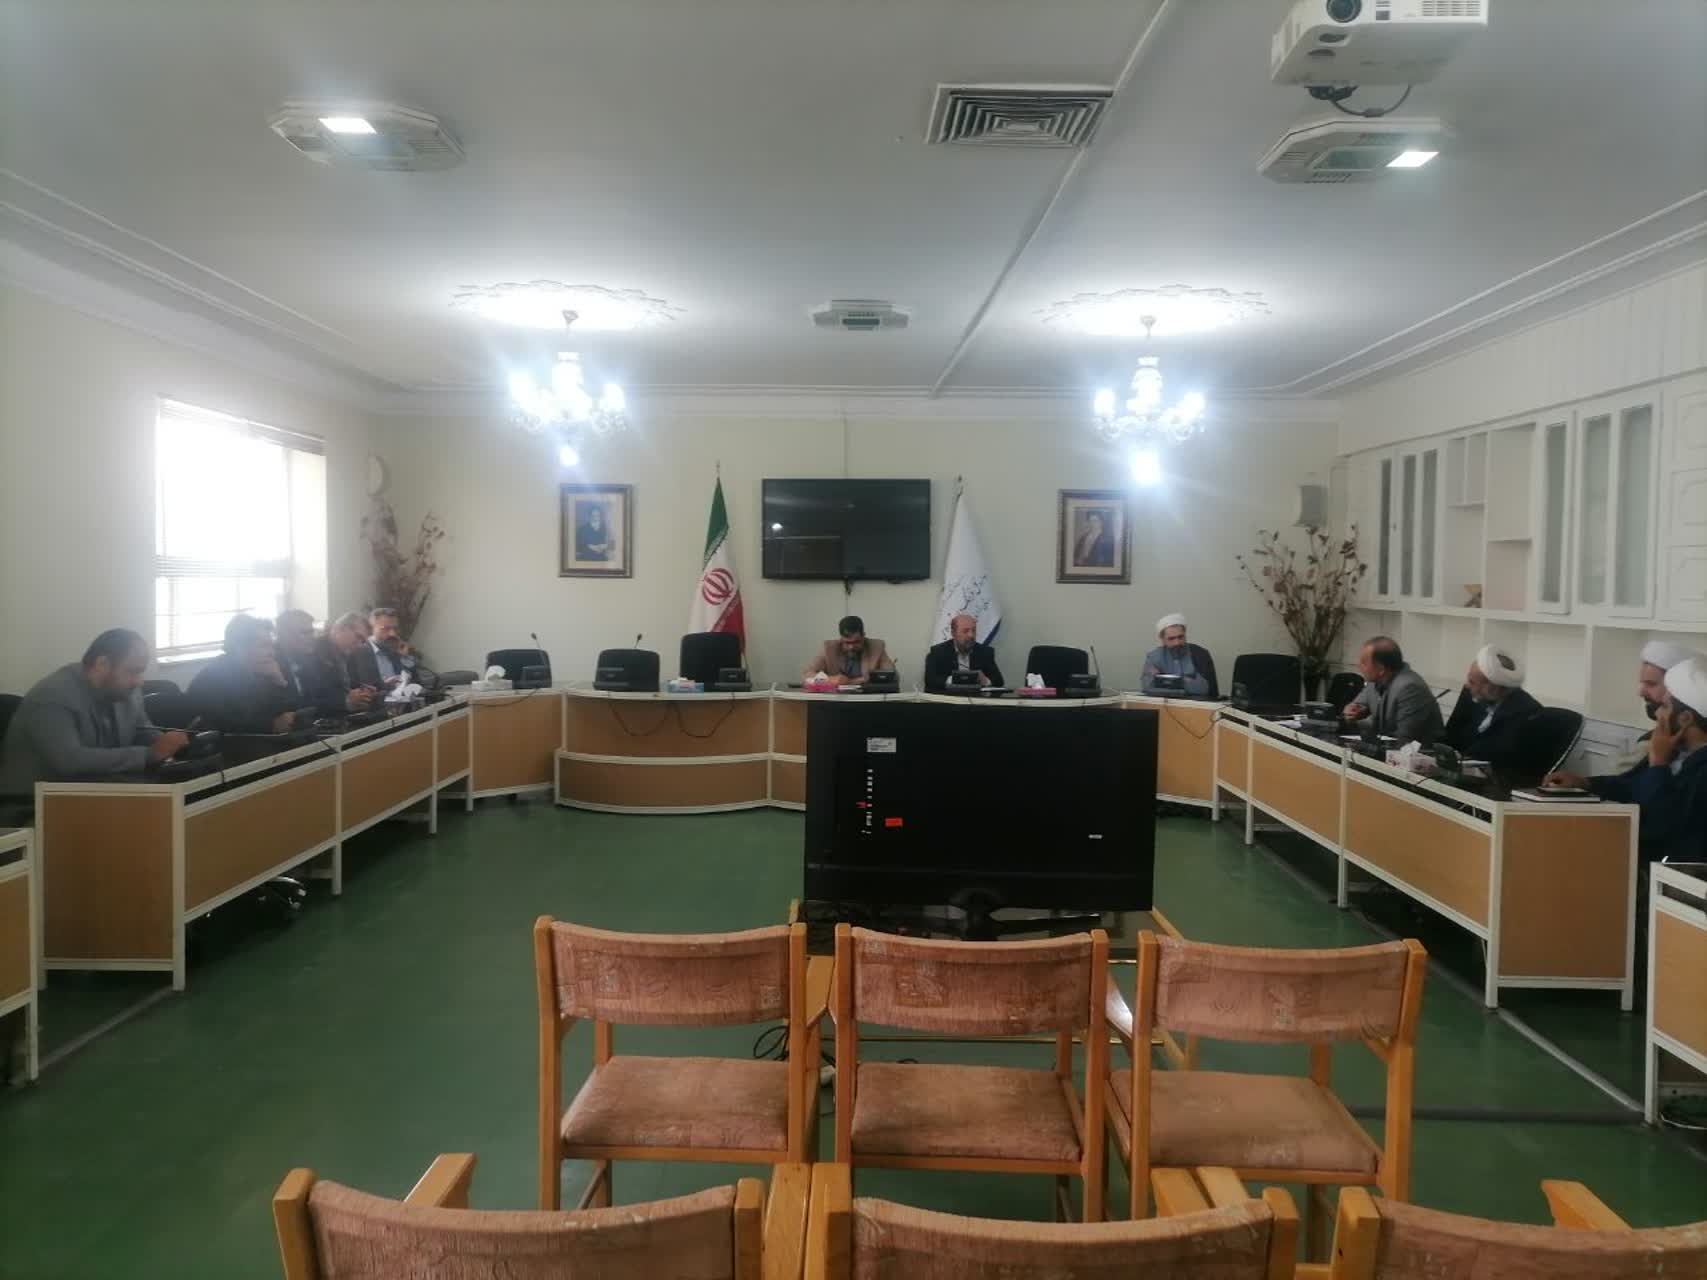 اولین جلسه کمیته، فرهنگی اجتماعی زیارت و خدمات سفر استان خراسان رضوی برگزار شد 